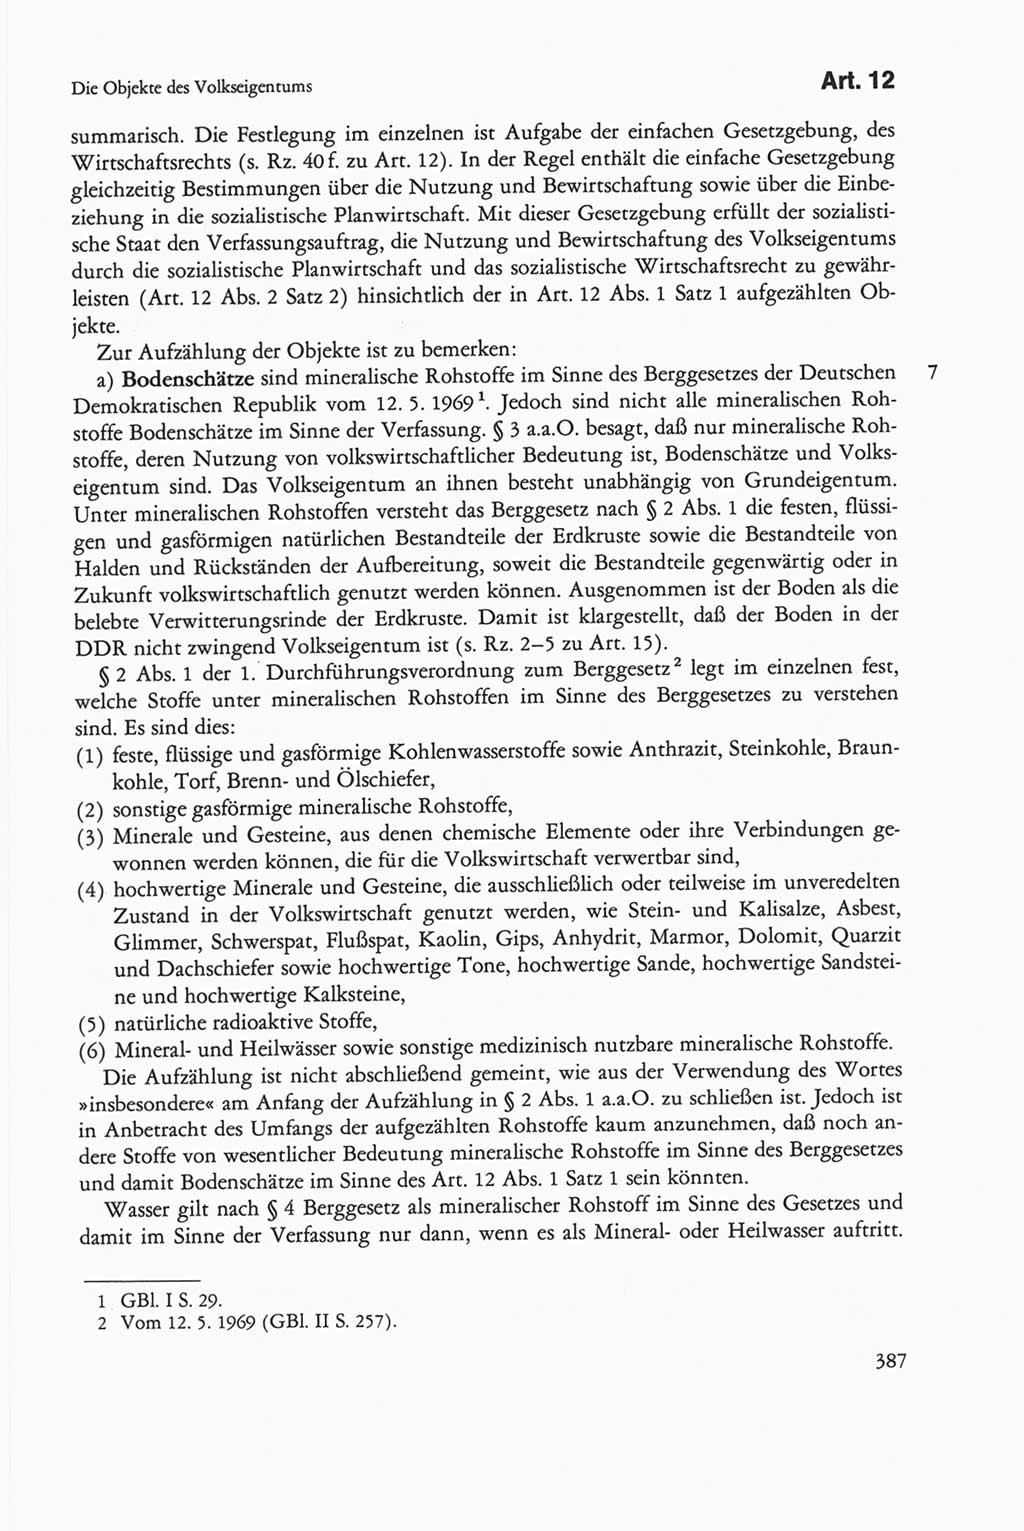 Die sozialistische Verfassung der Deutschen Demokratischen Republik (DDR), Kommentar 1982, Seite 387 (Soz. Verf. DDR Komm. 1982, S. 387)